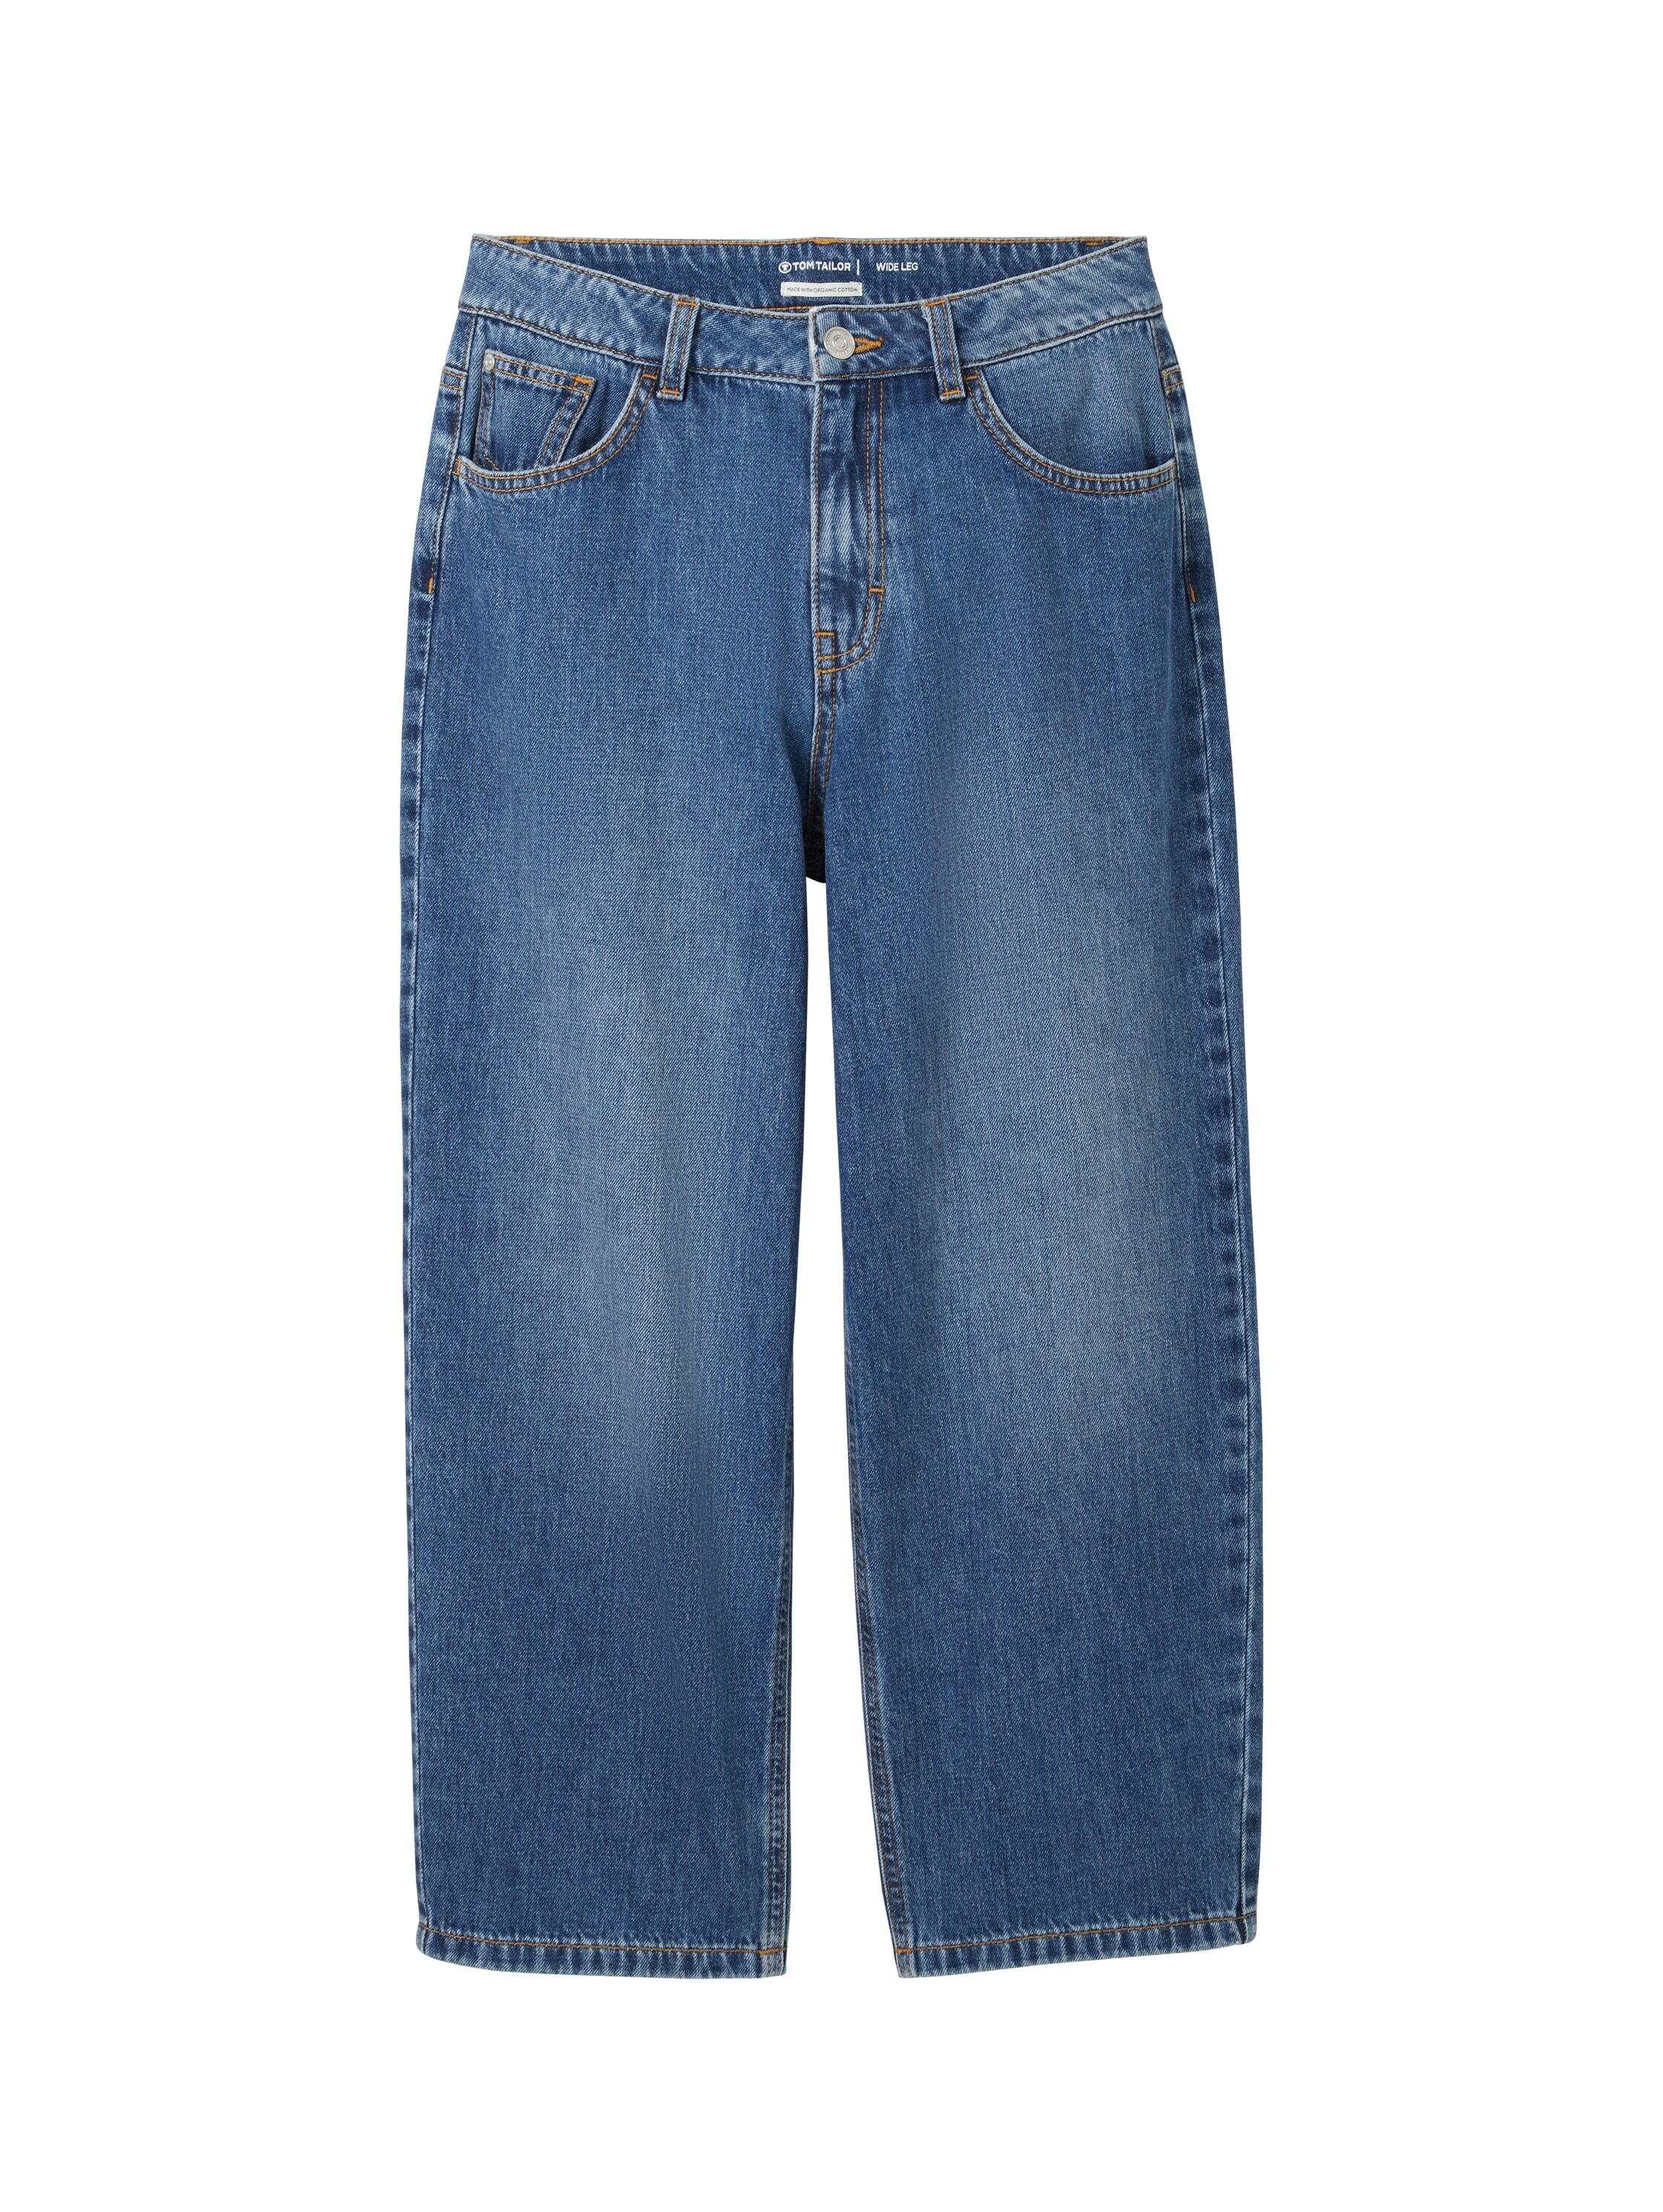 5-Pocket-Jeans, wie Baggy Jeans- mit ausgestelltem Bein